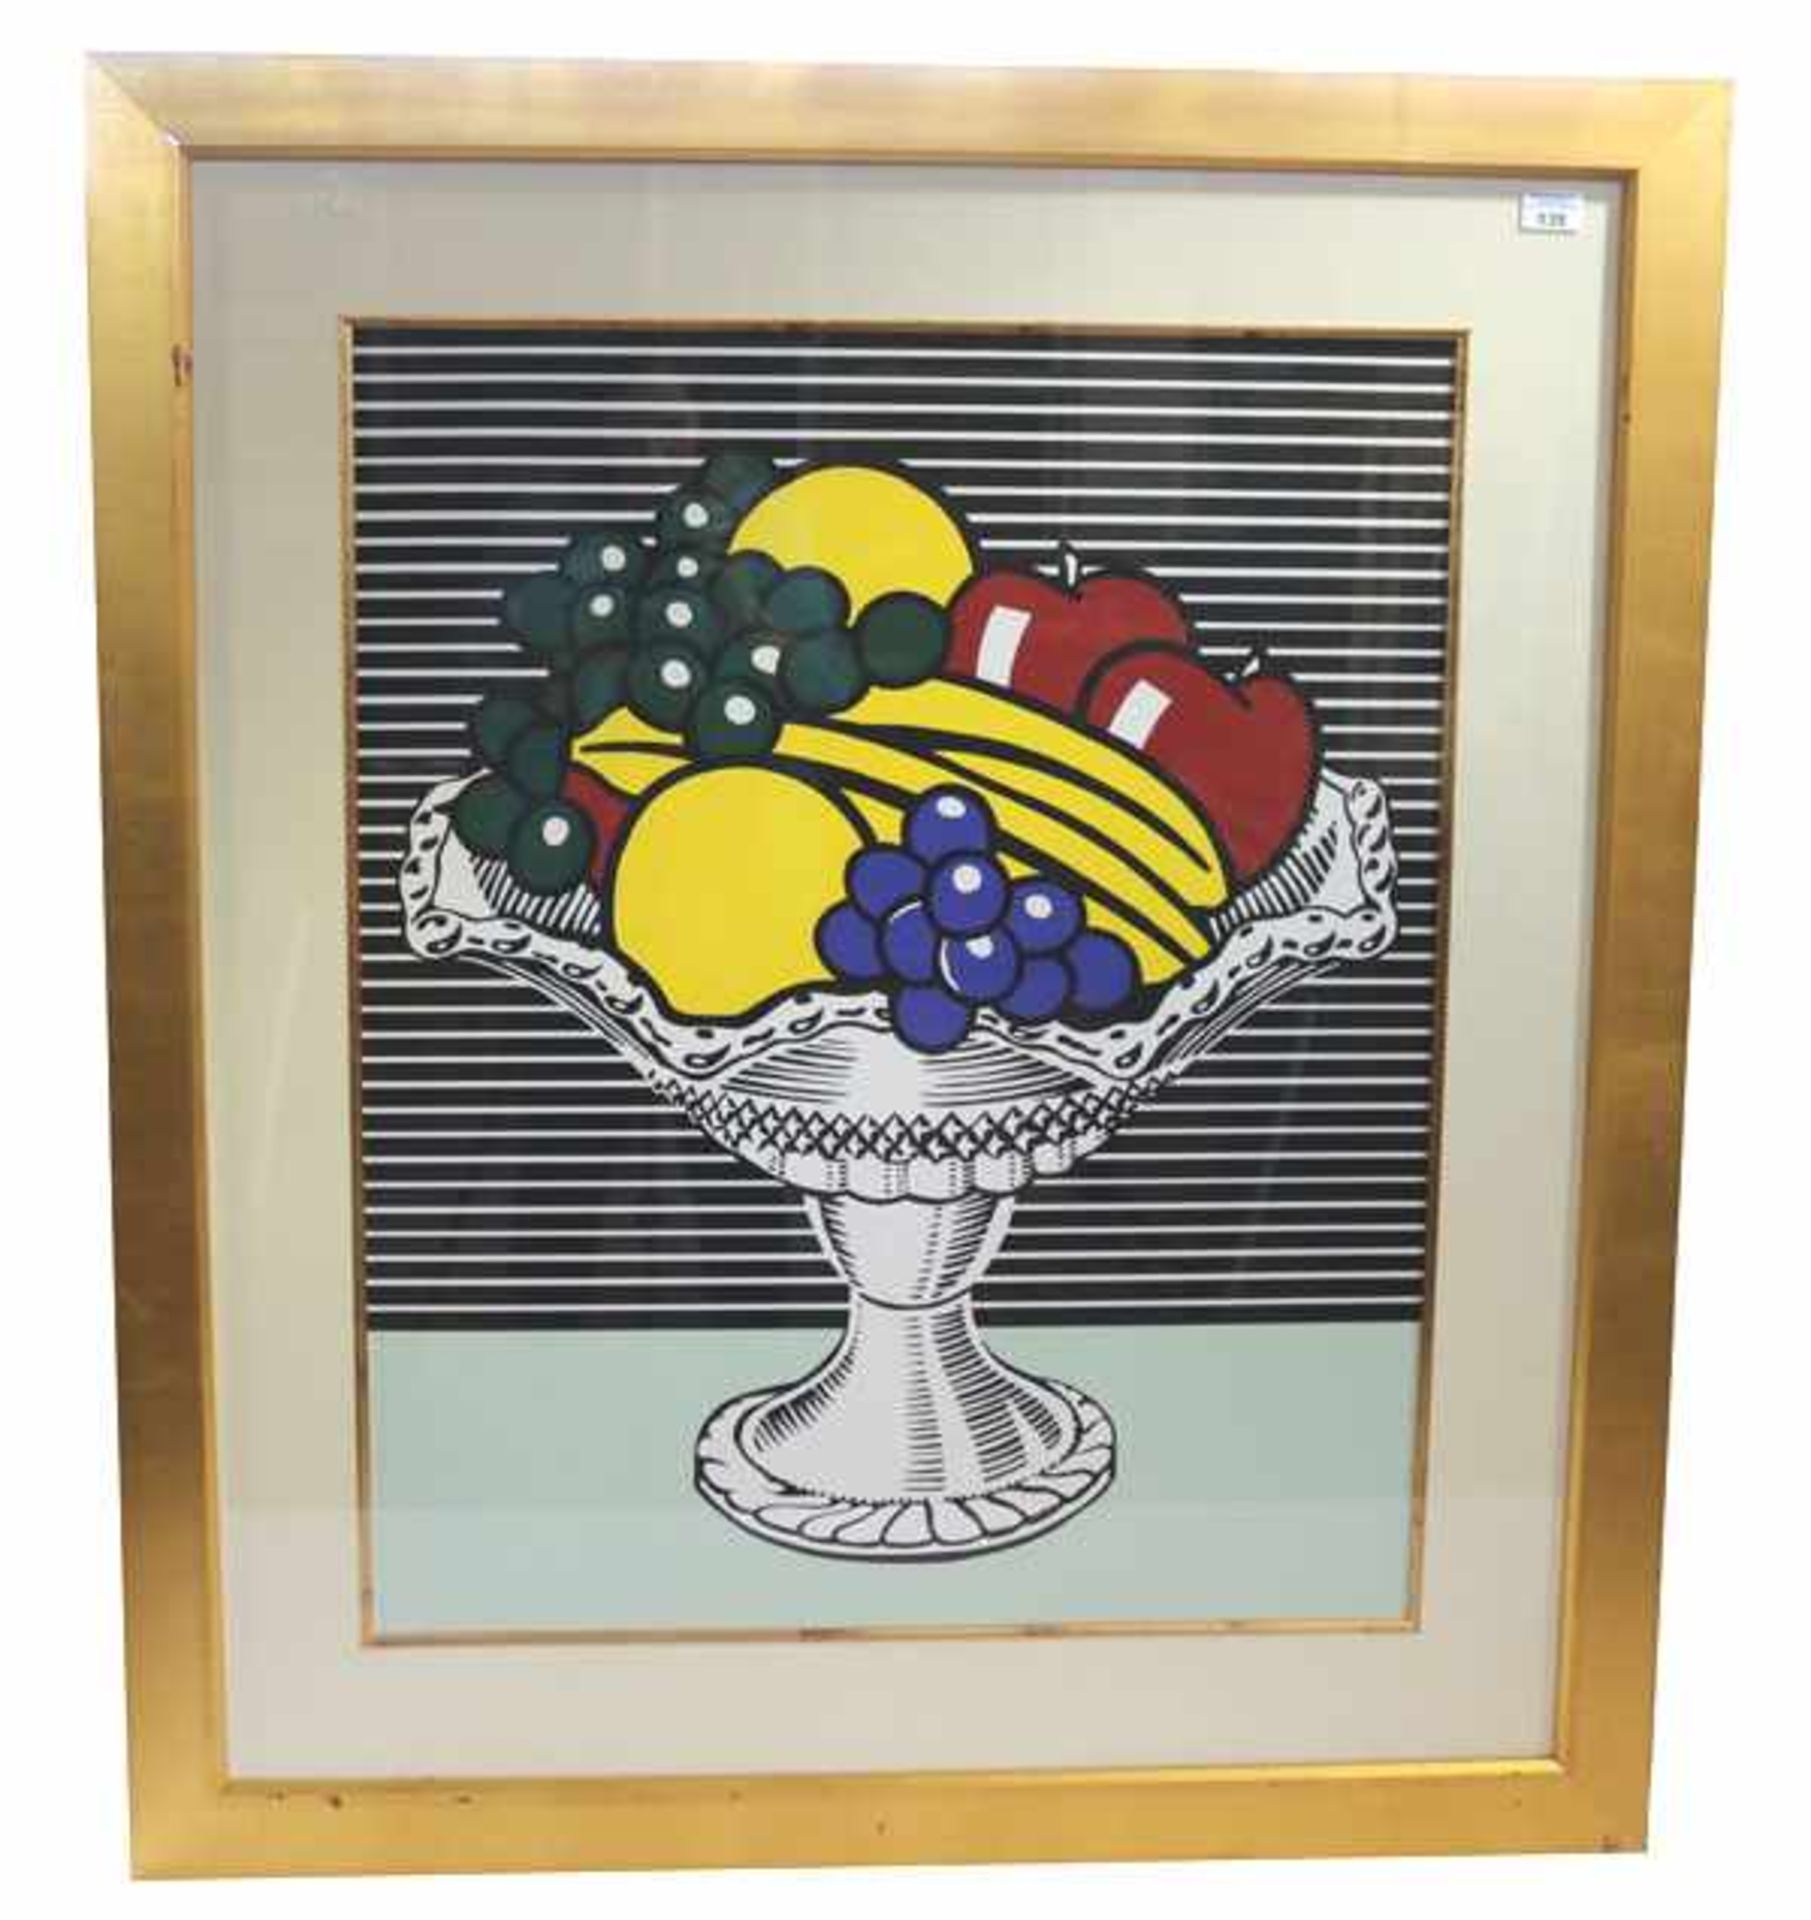 Grafik 'Fruitbasket', nach Roy Lichtenstein, mit Passepartout unter Glas gerahmt, Rahmen